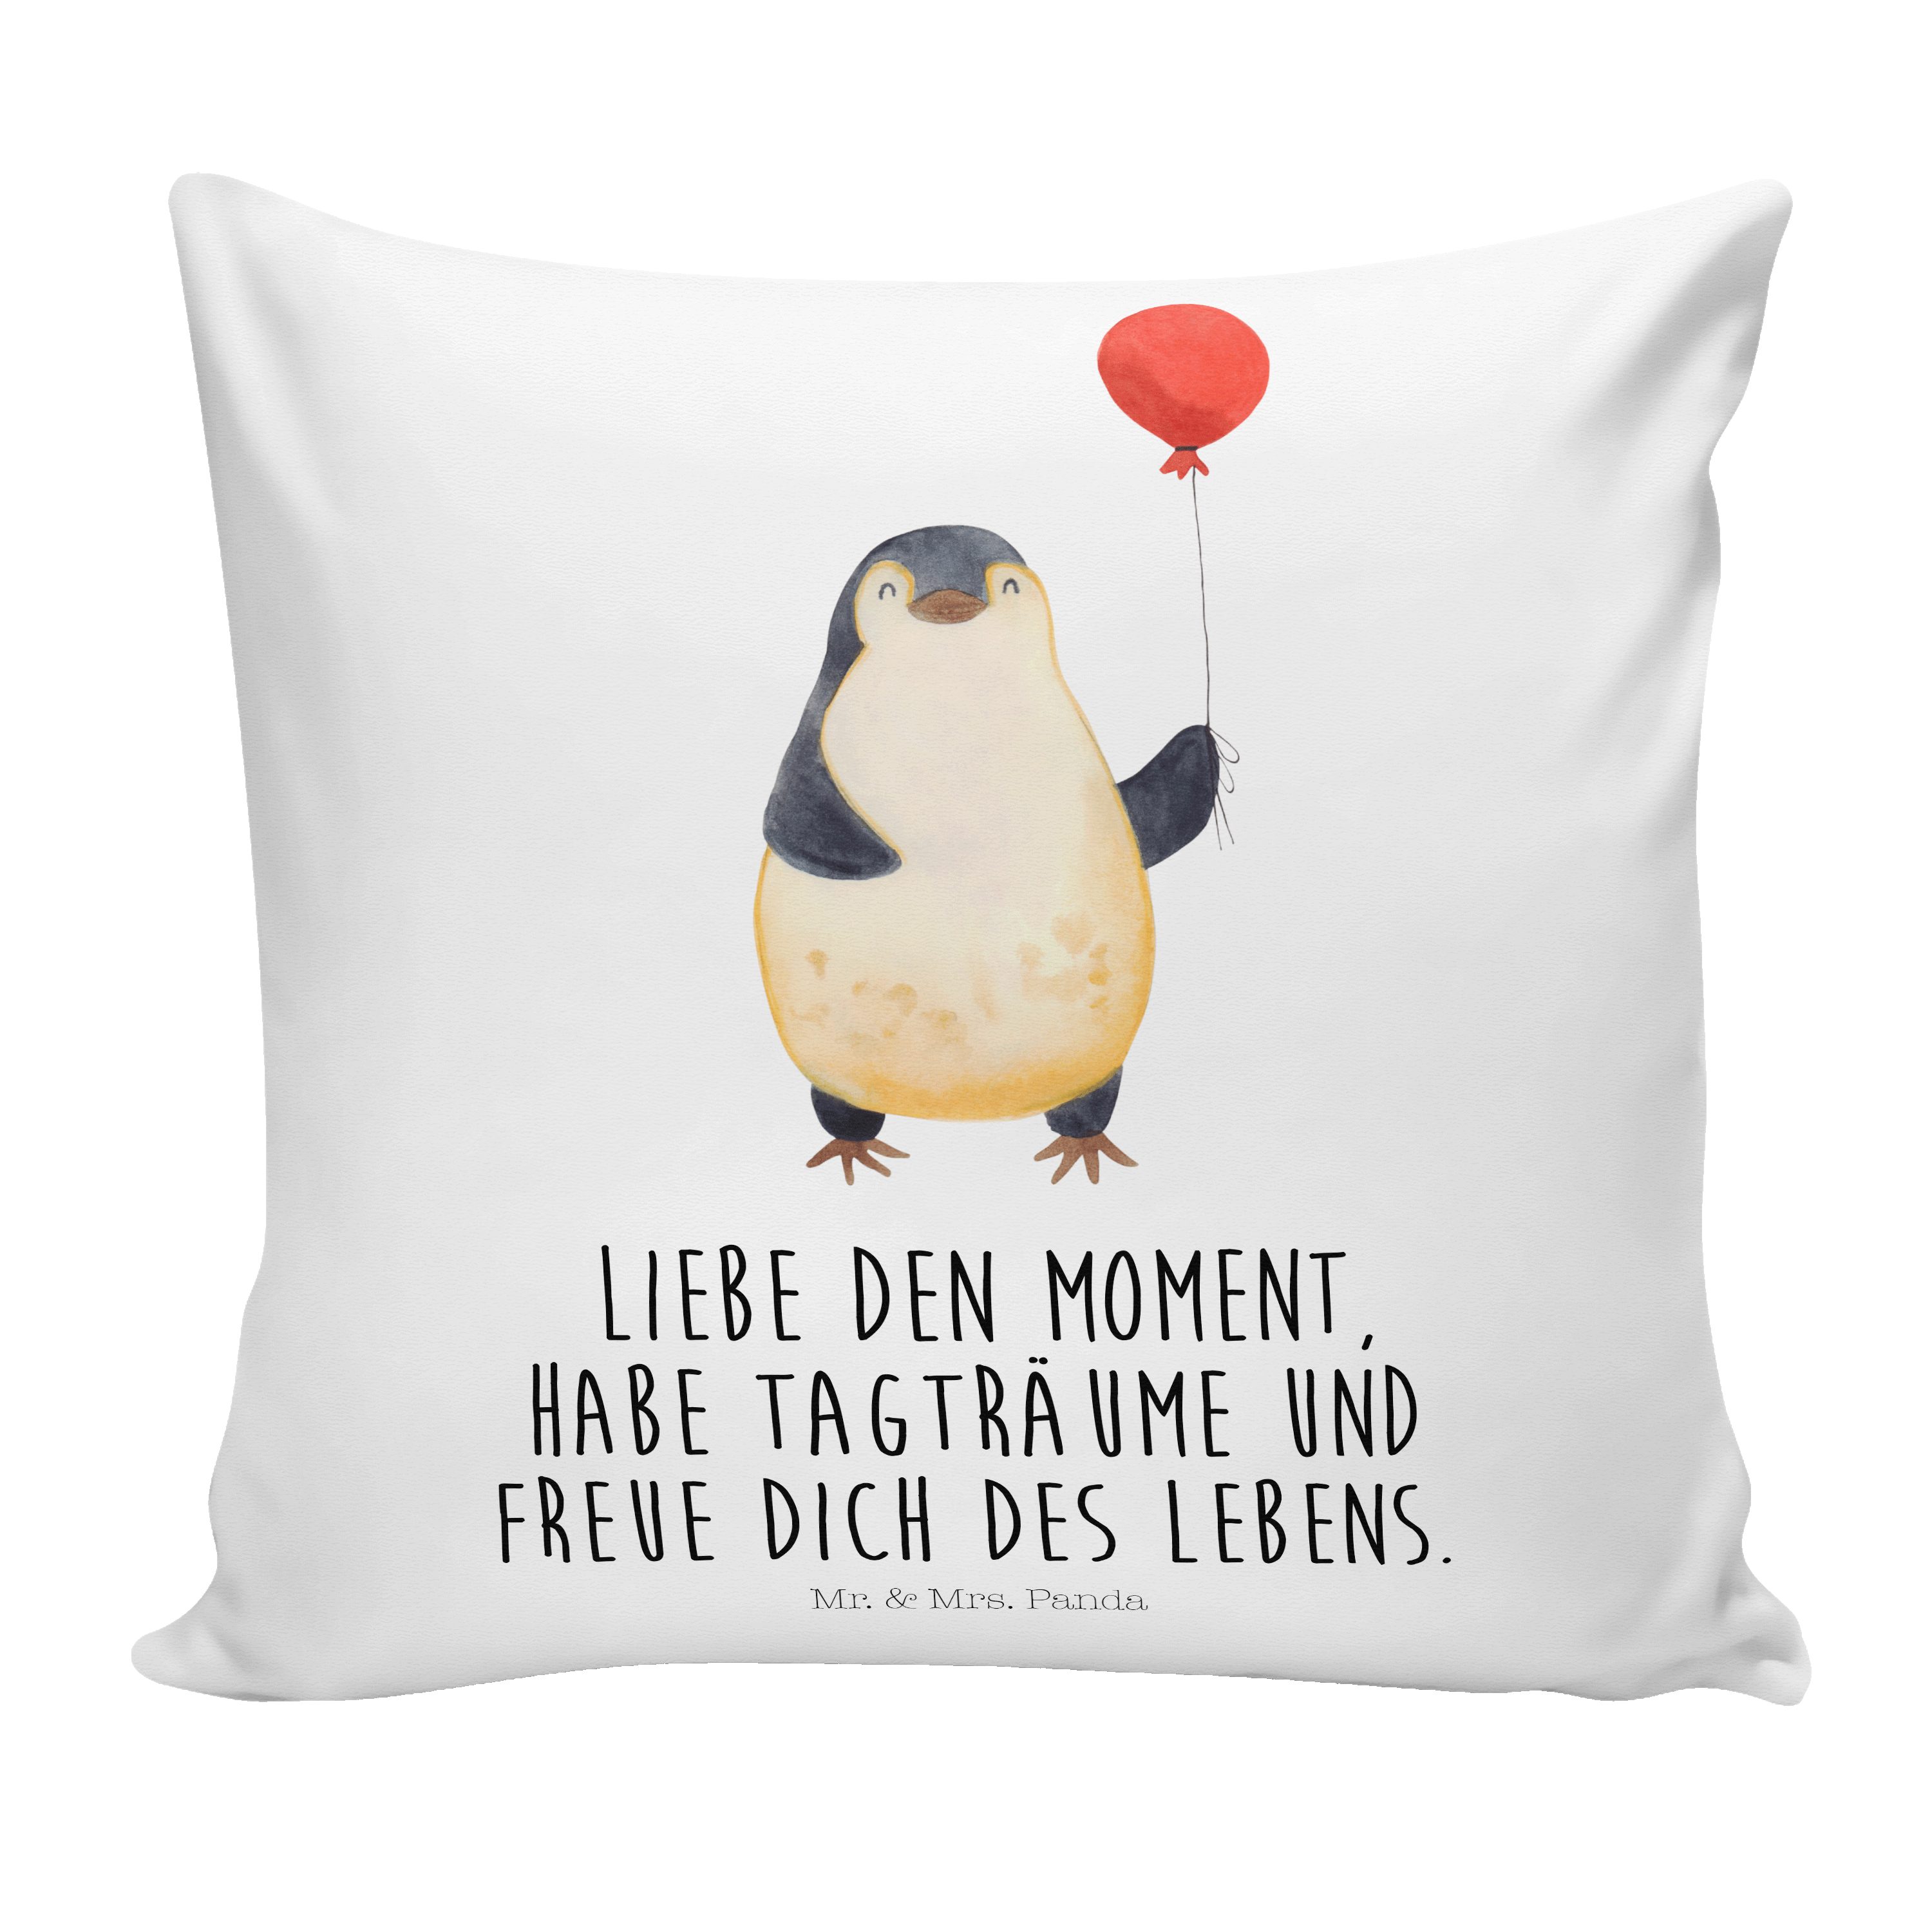 Mr. & Mrs. Panda Dekokissen Pinguin Luftballon - Weiß - Geschenk, Kissenhülle, Dekokissen, Liebe